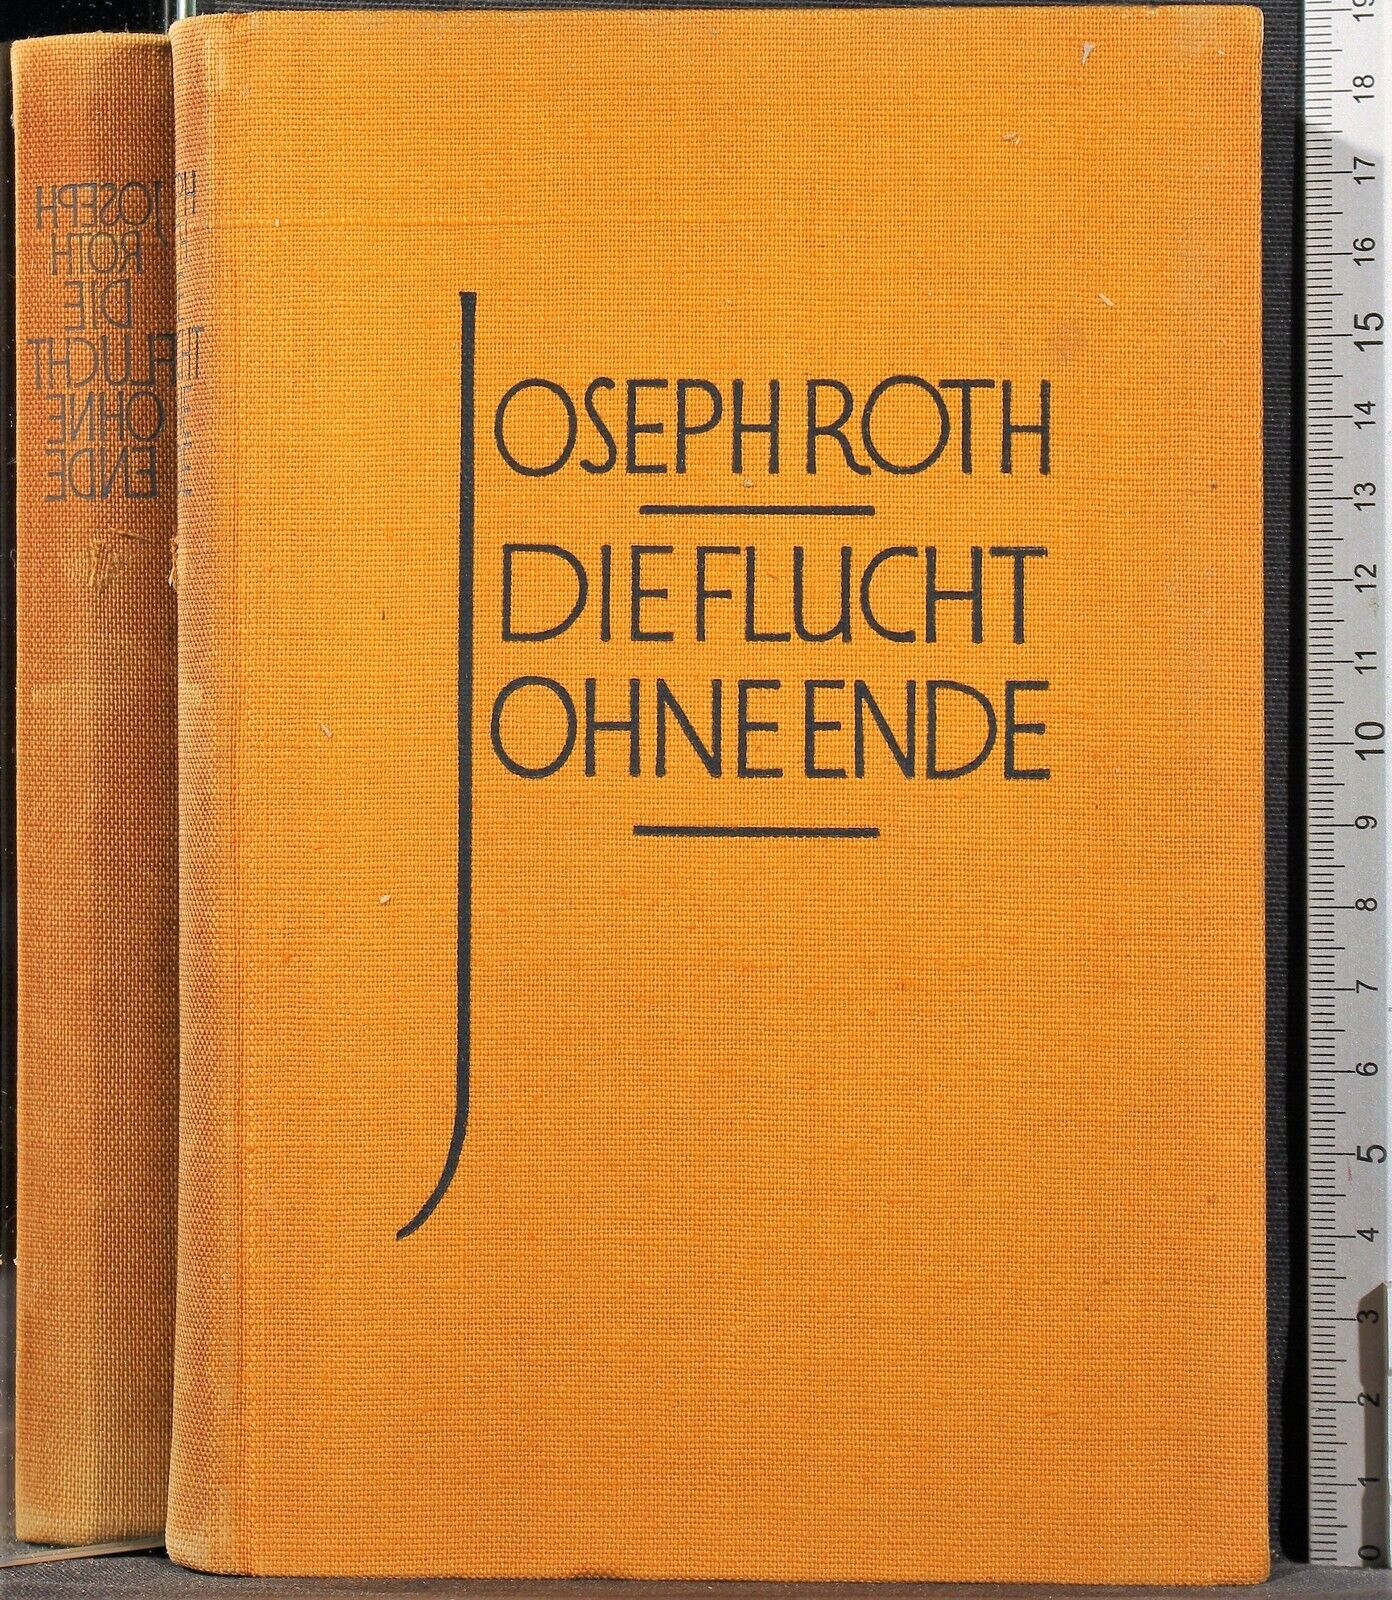 Die flucht ohne ende - Joseph Roth